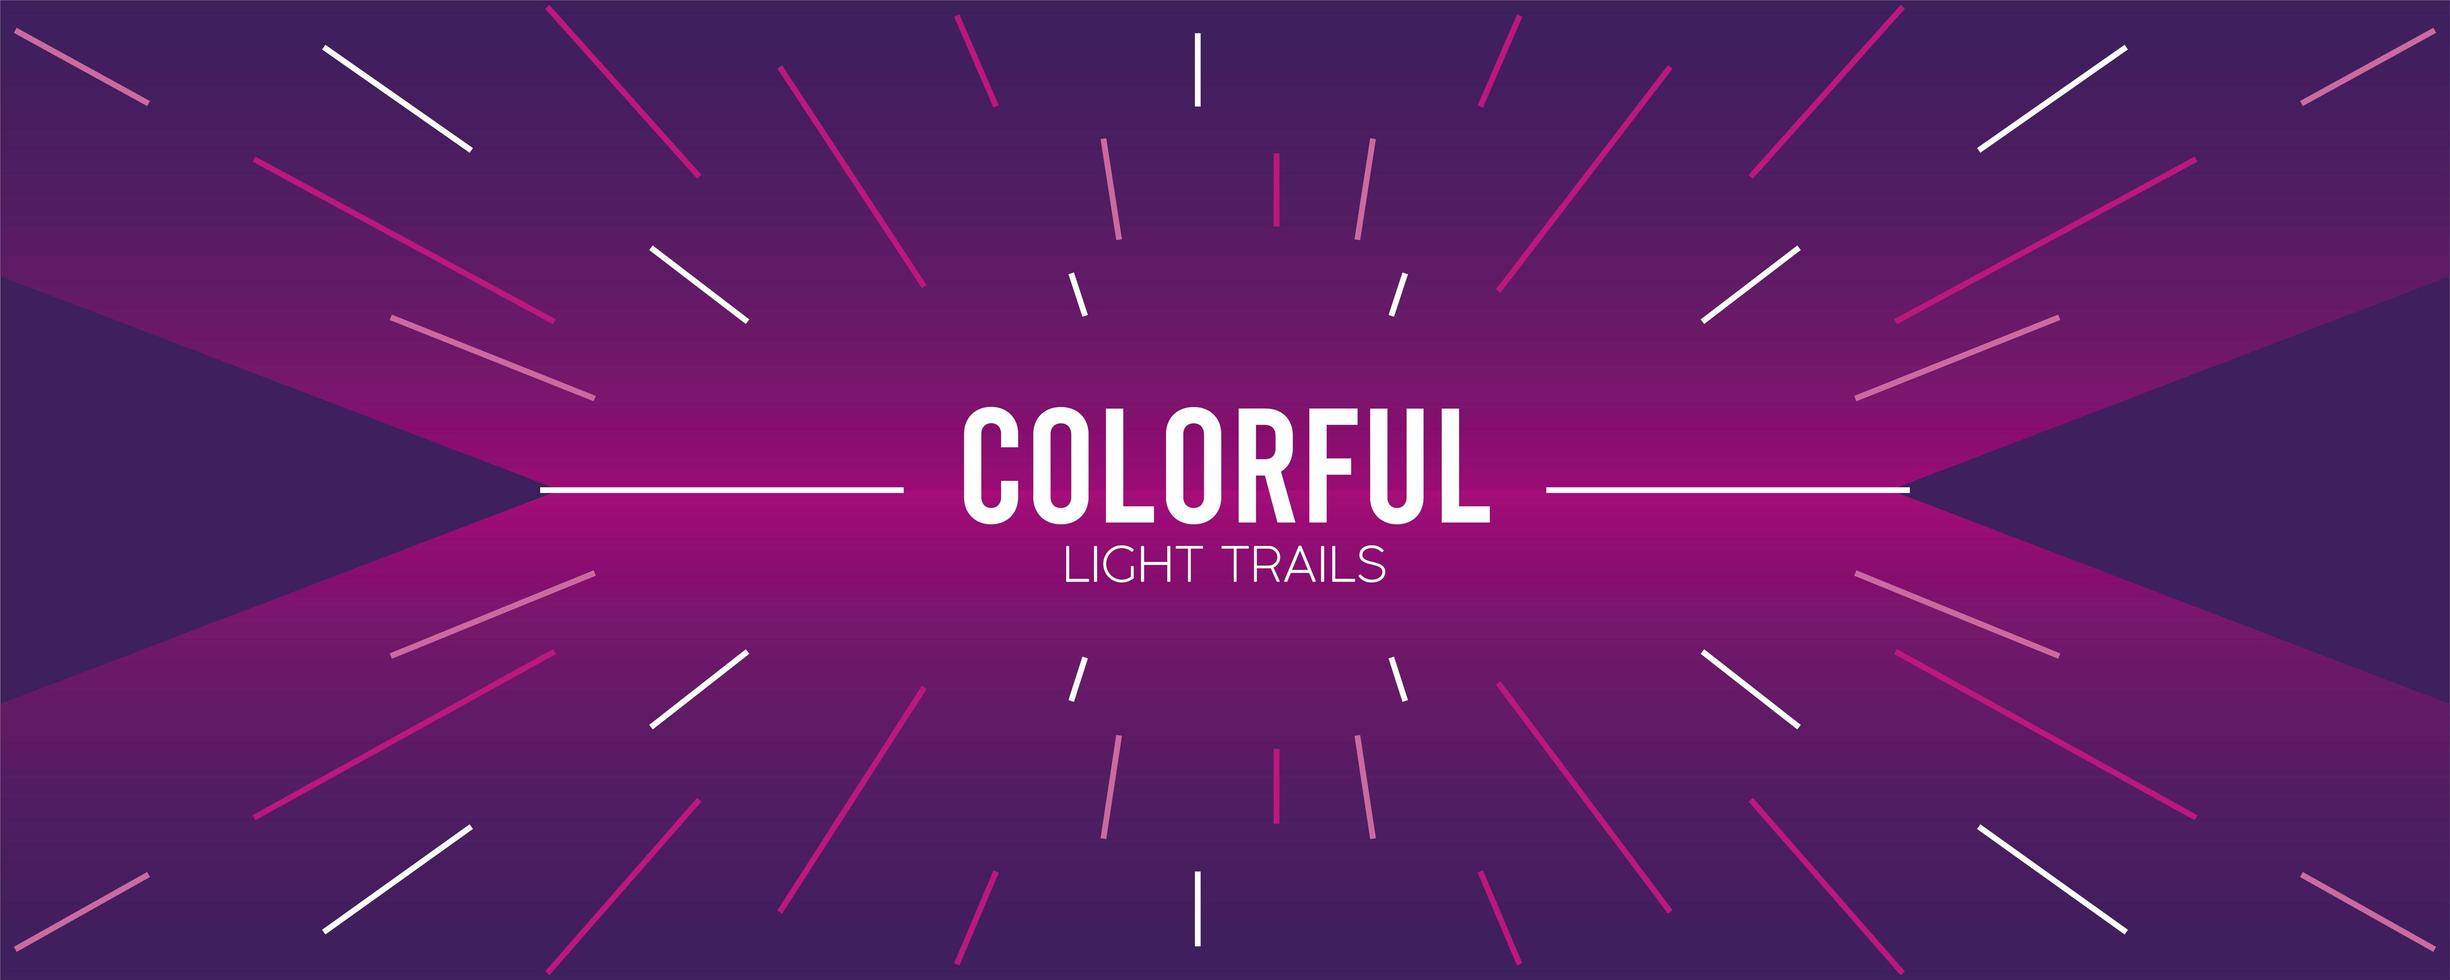 colorido rastro de luz en fondo púrpura vector